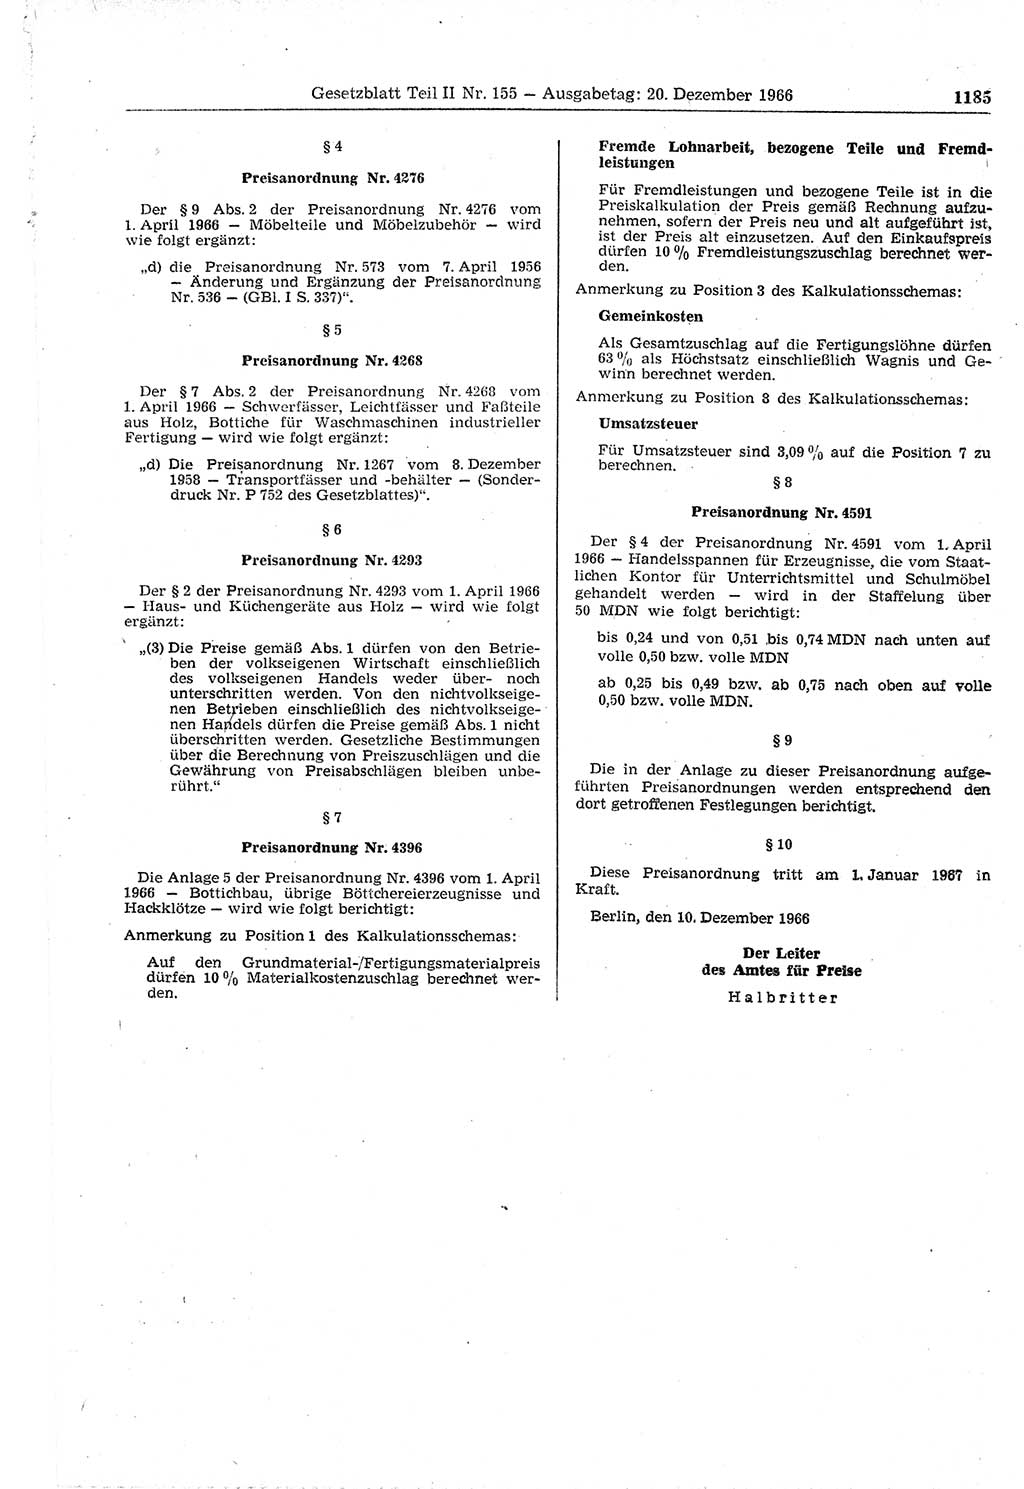 Gesetzblatt (GBl.) der Deutschen Demokratischen Republik (DDR) Teil ⅠⅠ 1966, Seite 1185 (GBl. DDR ⅠⅠ 1966, S. 1185)